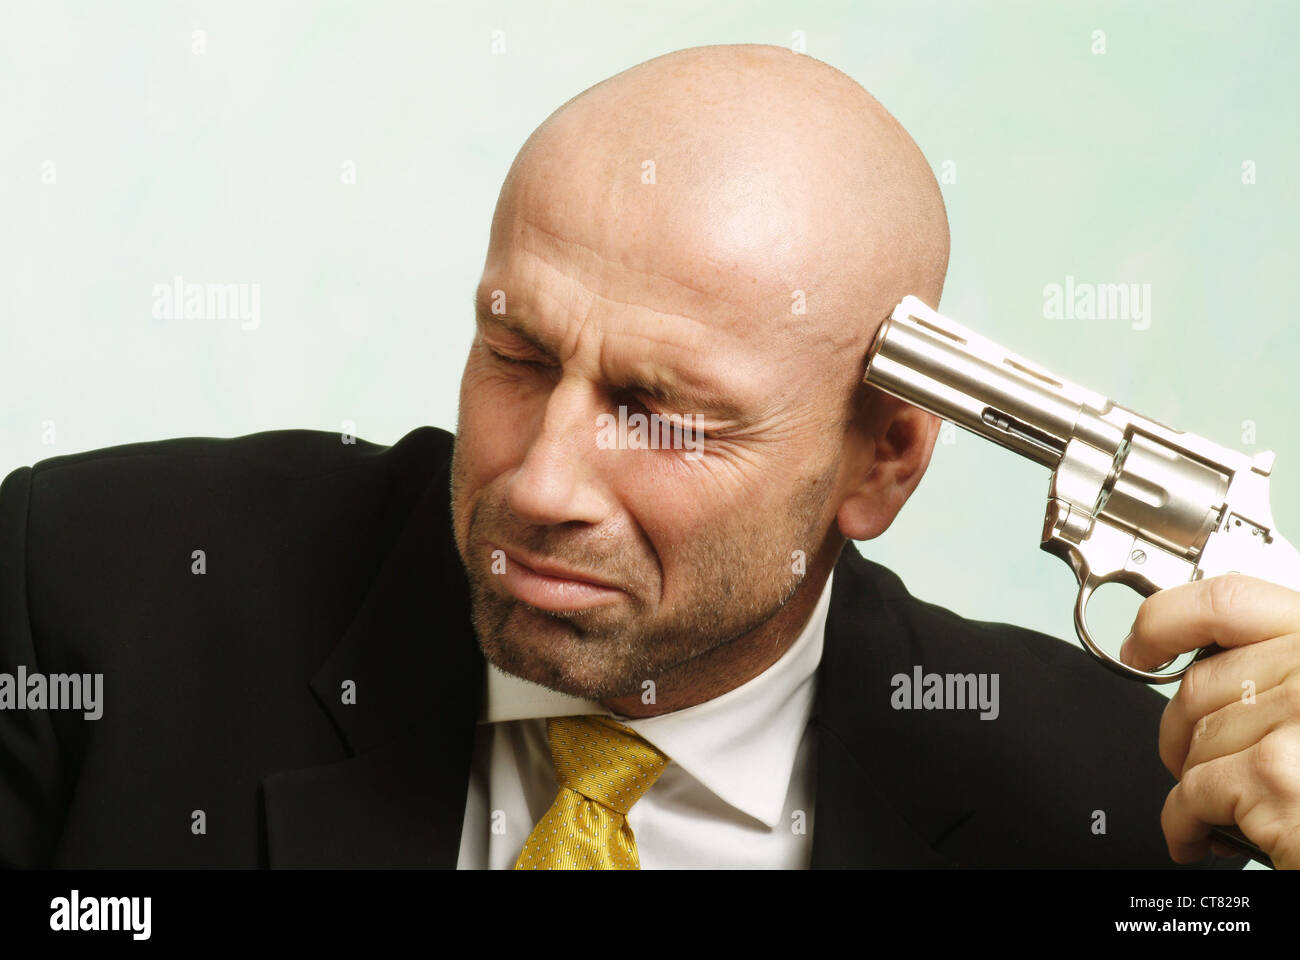 Man aiming a gun at himself Stock Photo